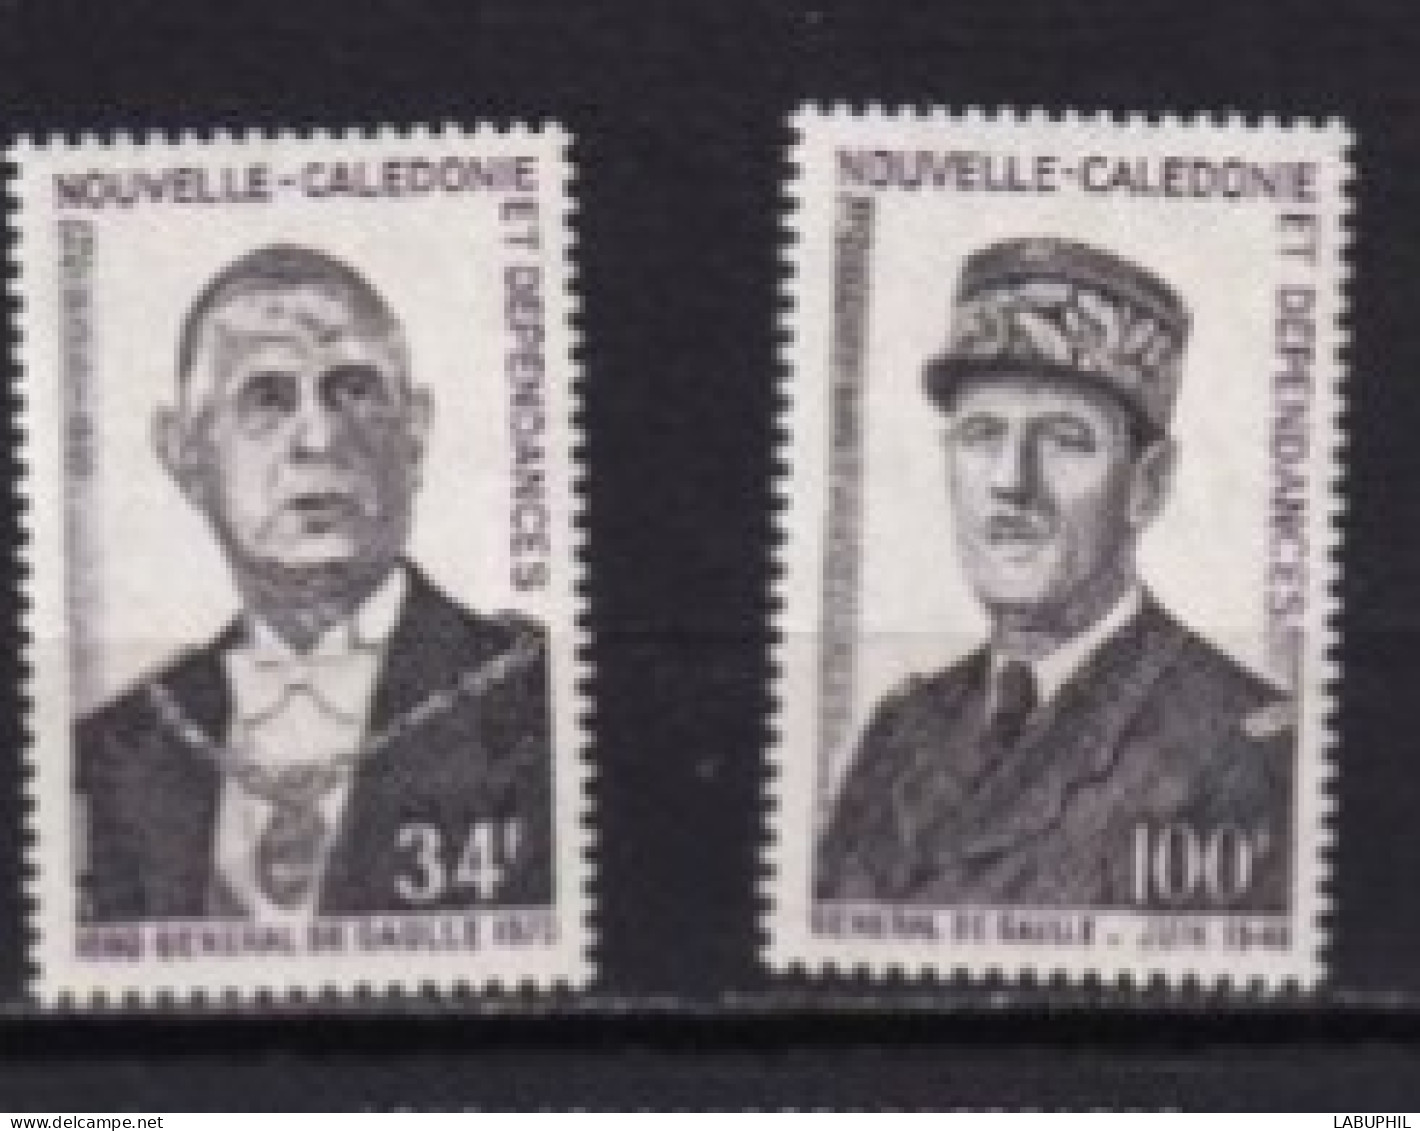 NOUVELLE CALEDONIE  NEUF MNH ** 1971 De Gaulle - Ongebruikt